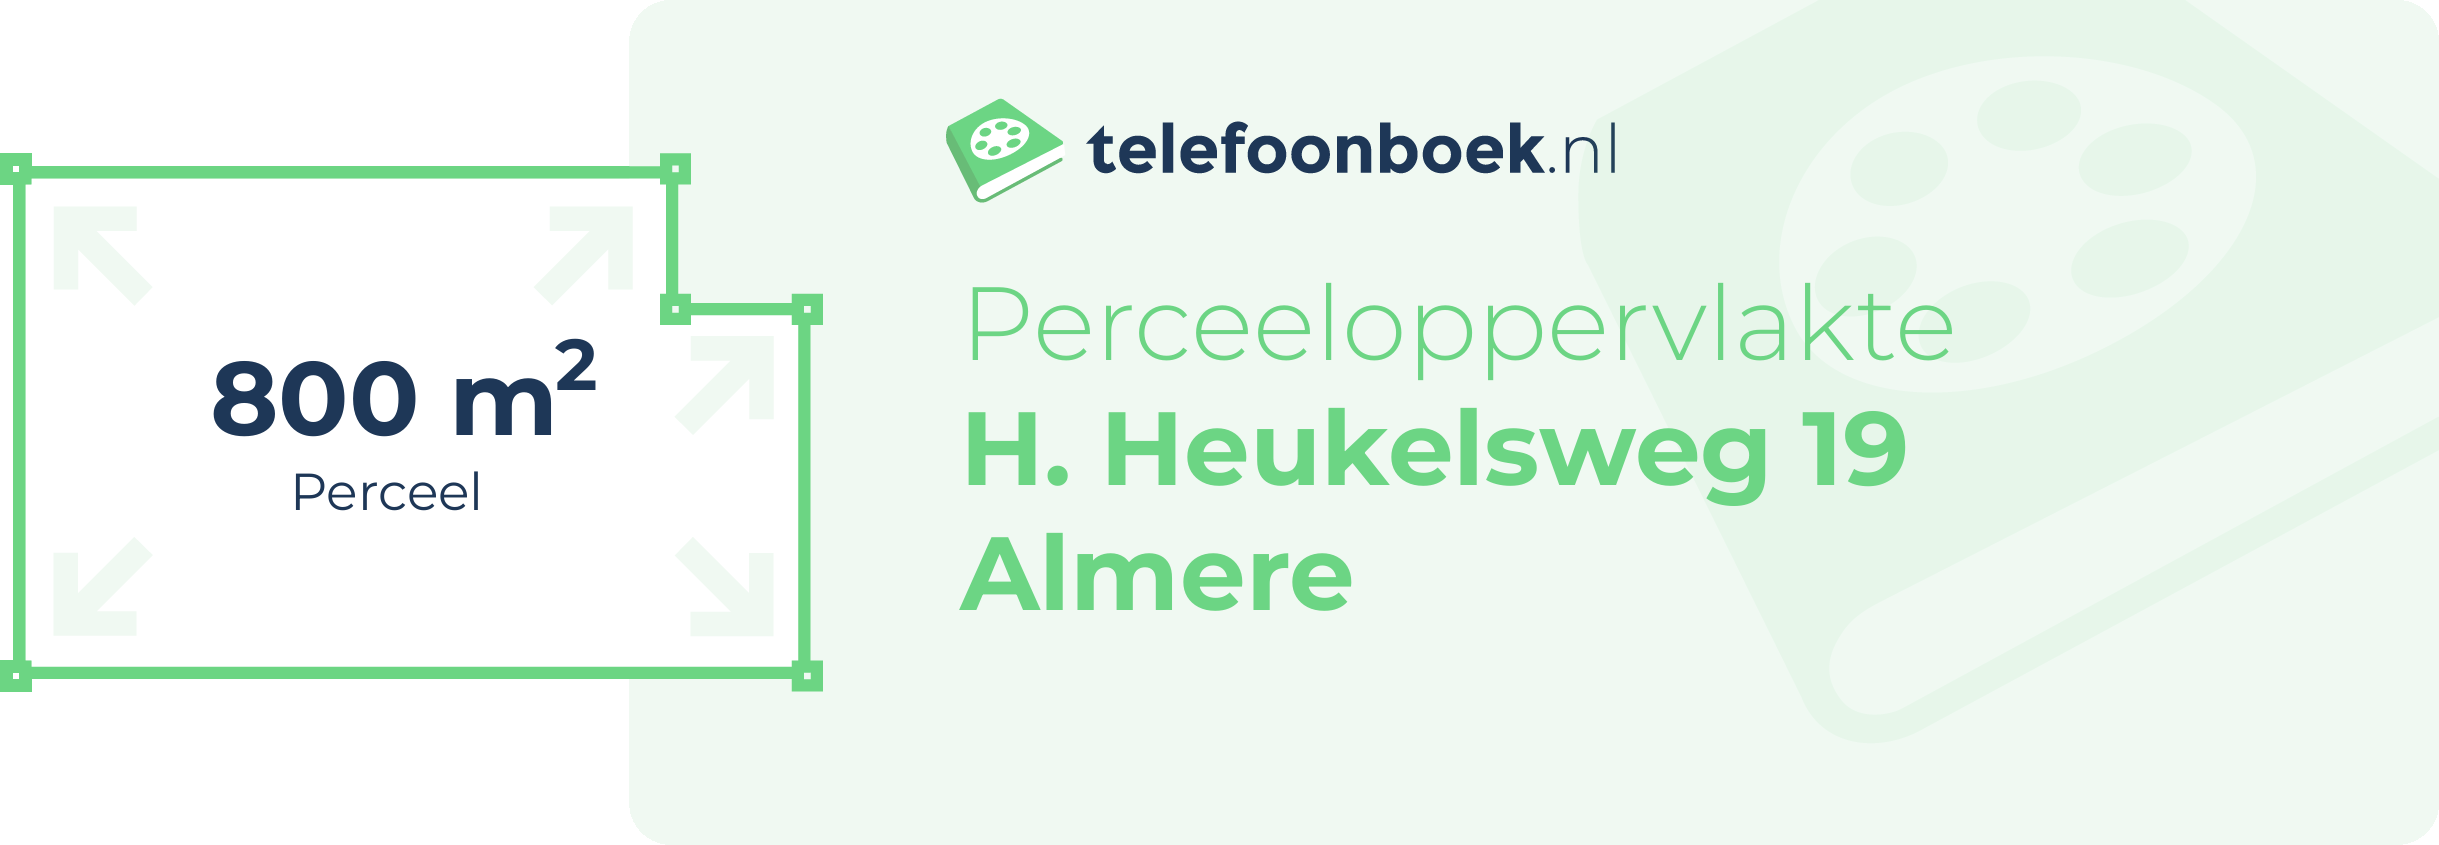 Perceeloppervlakte H. Heukelsweg 19 Almere